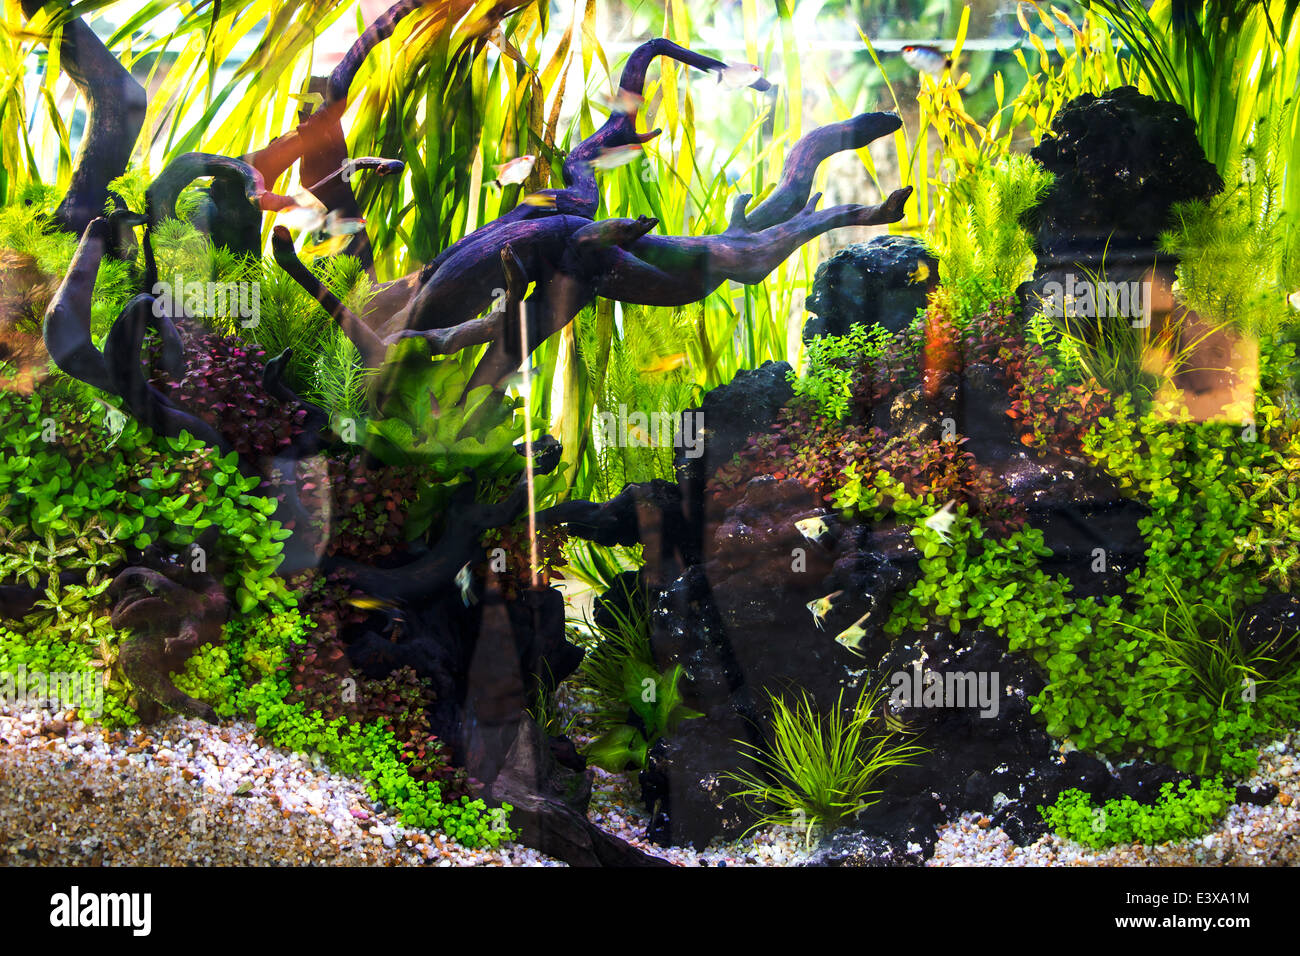 Aquarium fish Stock Photo